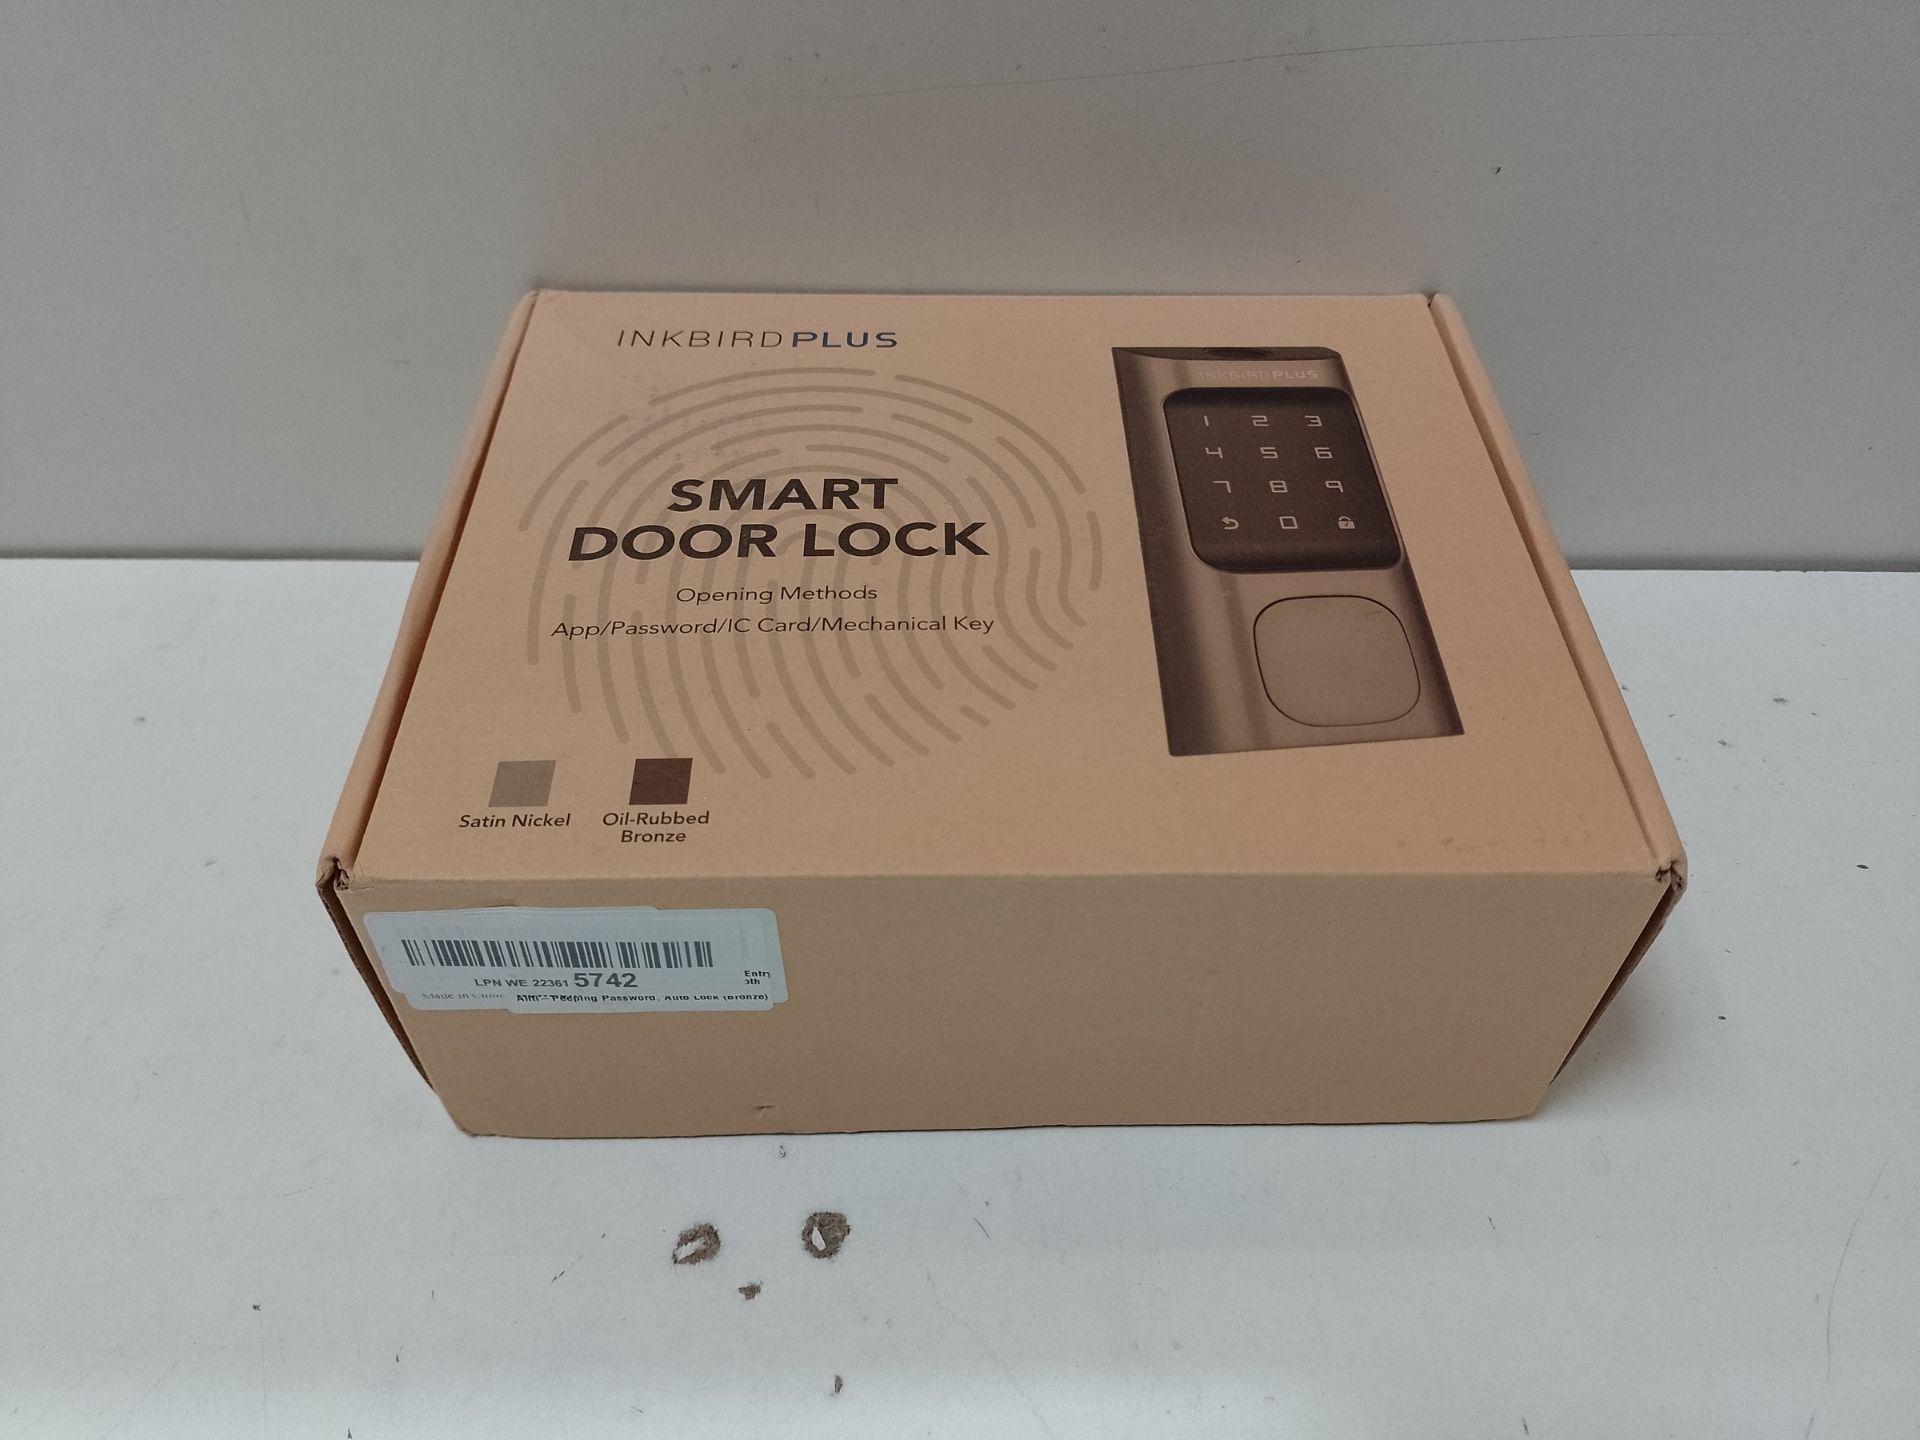 RRP £114.15 INKBIRDPLUS Smart Door Lock - Image 2 of 2